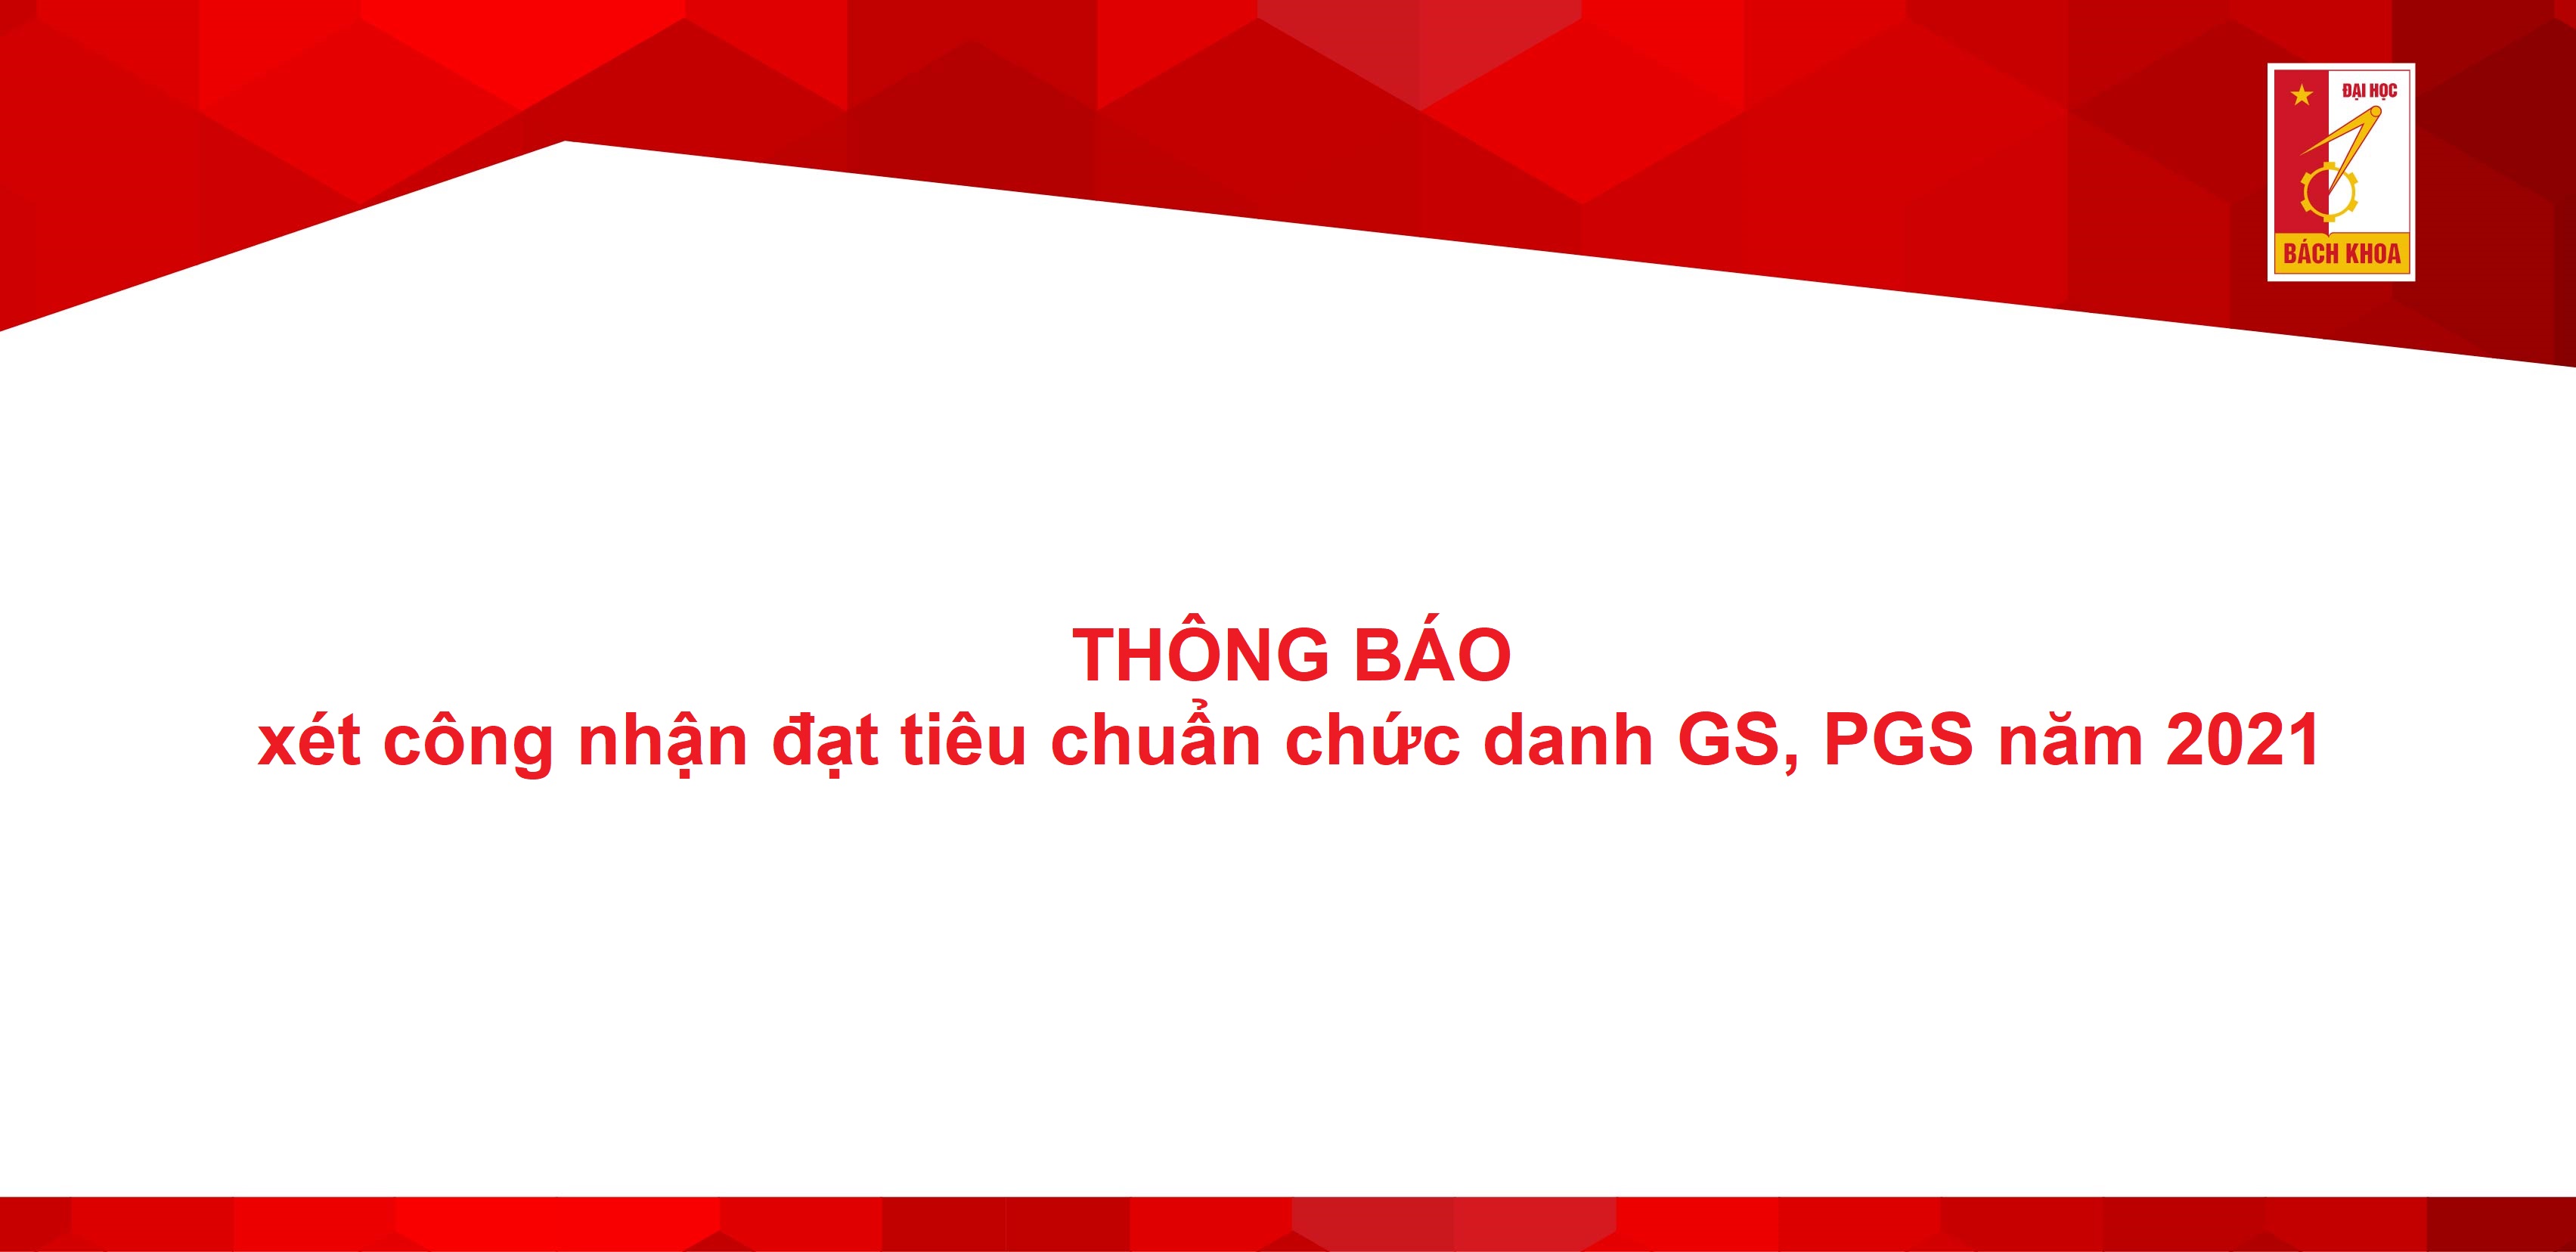 Tiêu chuẩn chức danh GS, PGS đóng vai trò rất quan trọng trong sự phát triển của các ngành khoa học xã hội tại Việt Nam. Để hiểu rõ hơn về những tiêu chí và quy trình công nhận chức danh, hãy tham khảo các hình ảnh liên quan đến chủ đề này. Bạn có thể khám phá thêm về các tầm quan trọng của giới thạc sỹ và tiến sỹ trong việc phát triển đất nước.